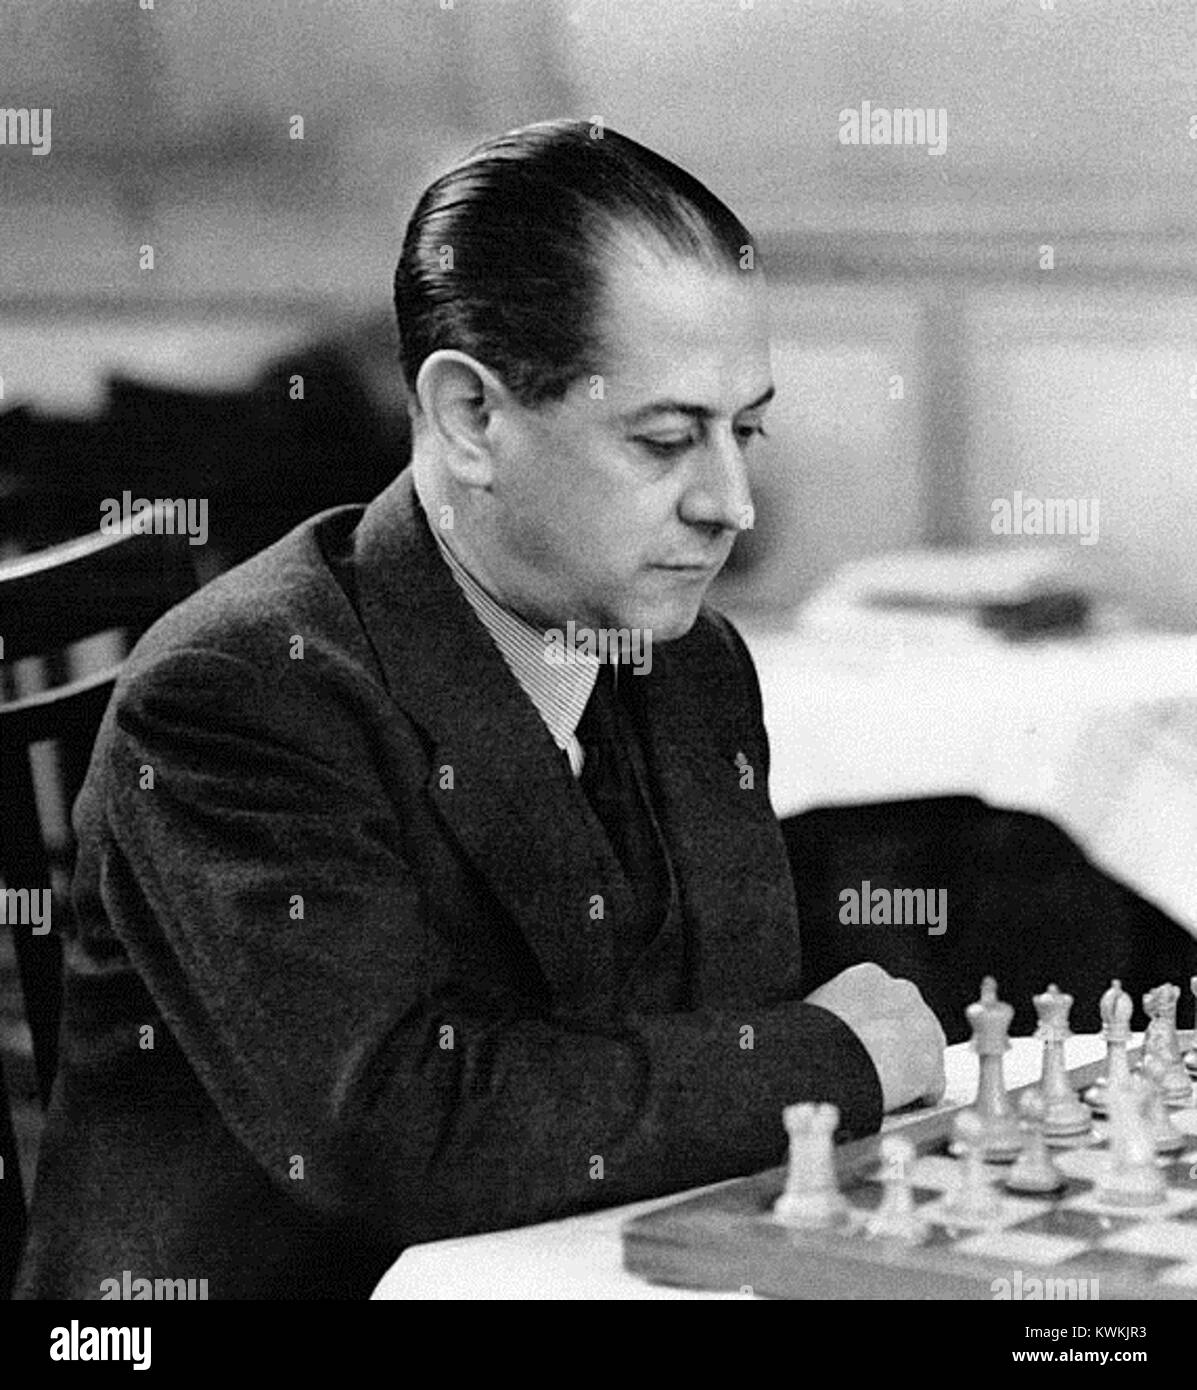 Alekhine Black and White Stock Photos & Images - Alamy